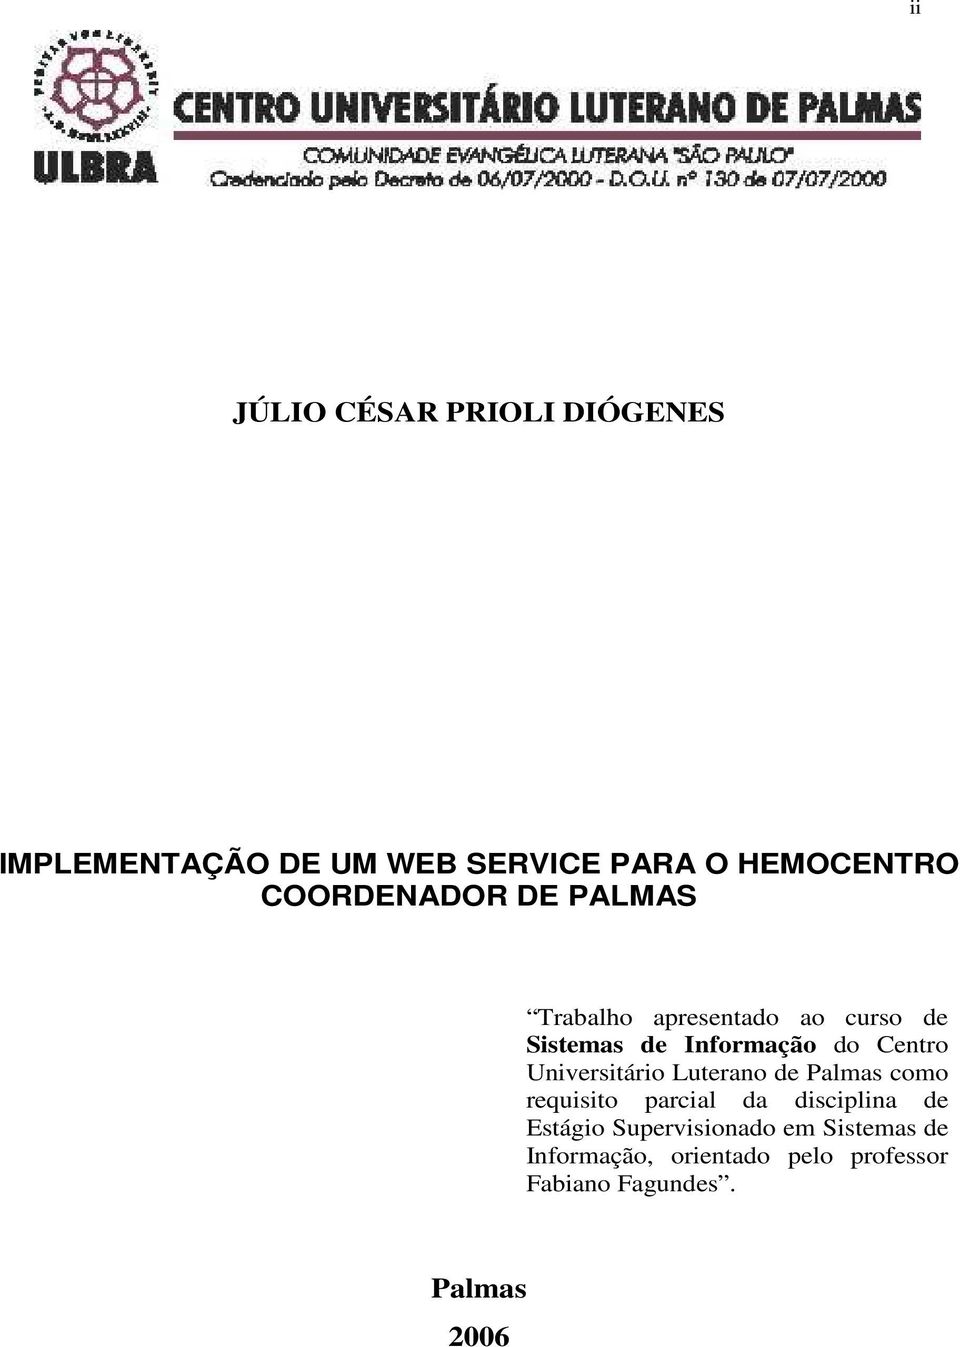 Centro Universitário Luterano de Palmas como requisito parcial da disciplina de